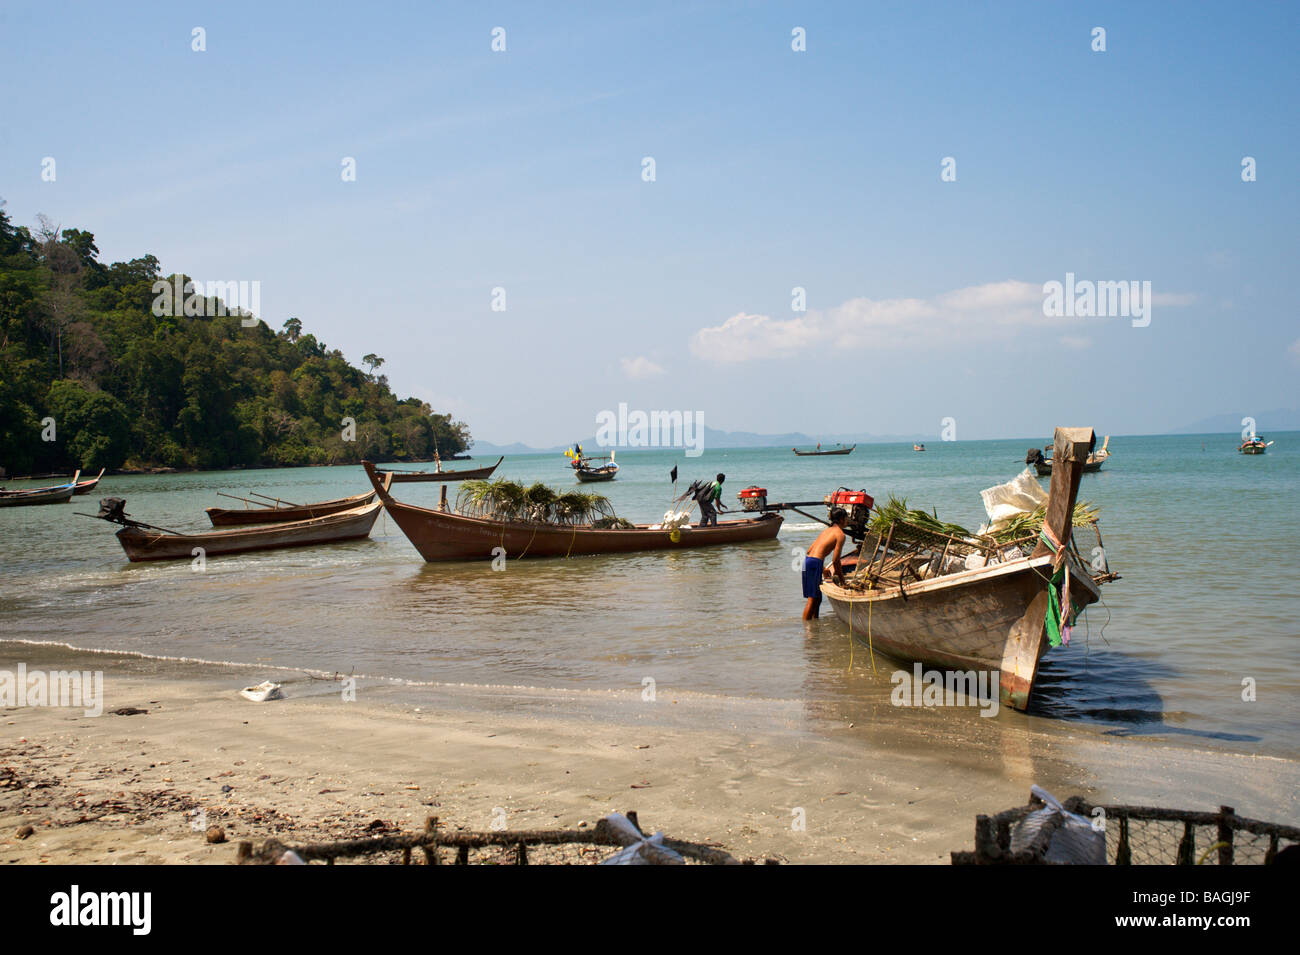 Lunga coda di barche da pesca ona beach nel sud della Thailandia Foto Stock